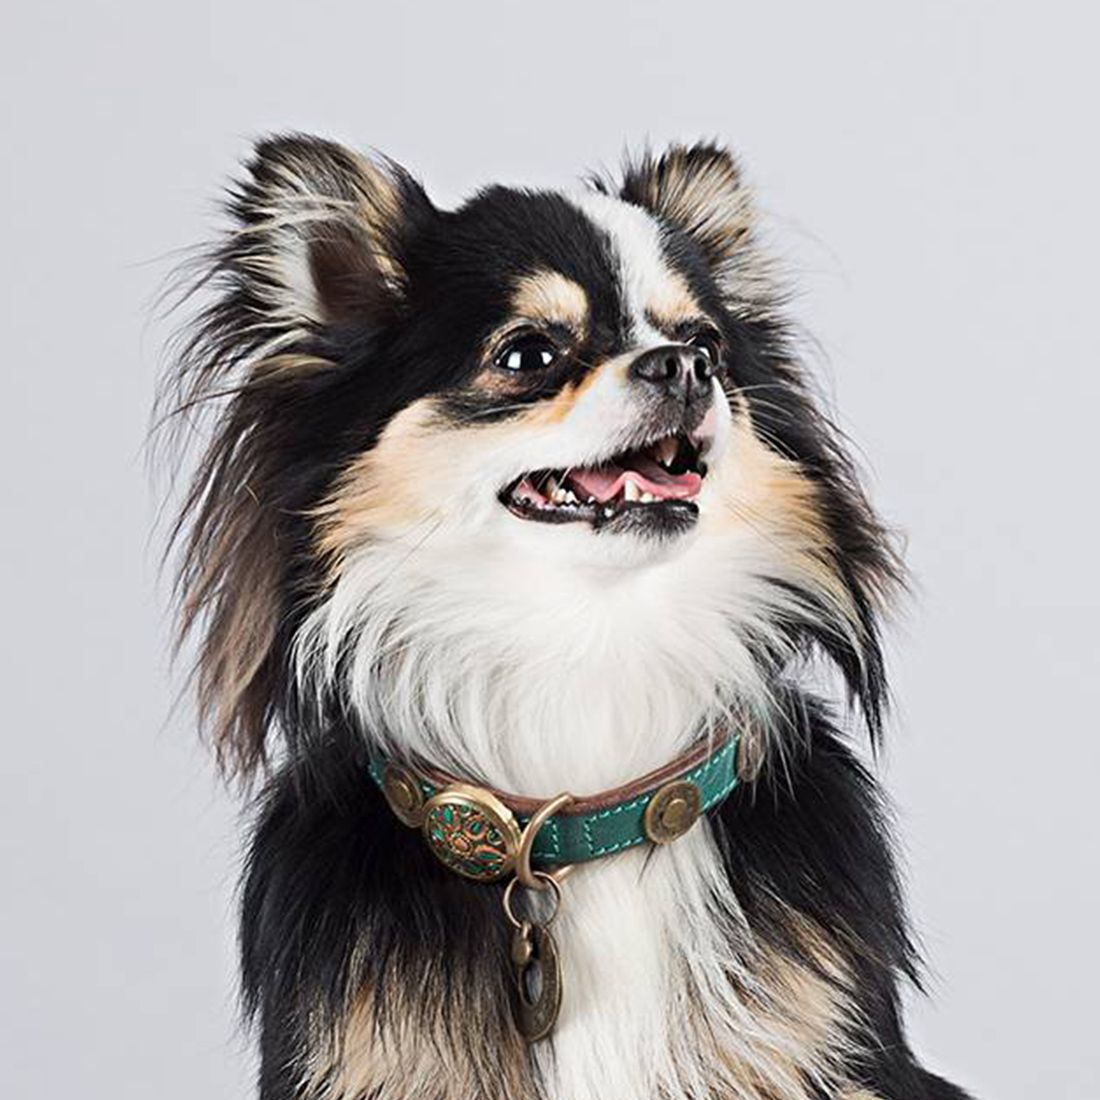 rebel halsband van Dog With Zichtbare kwaliteit.